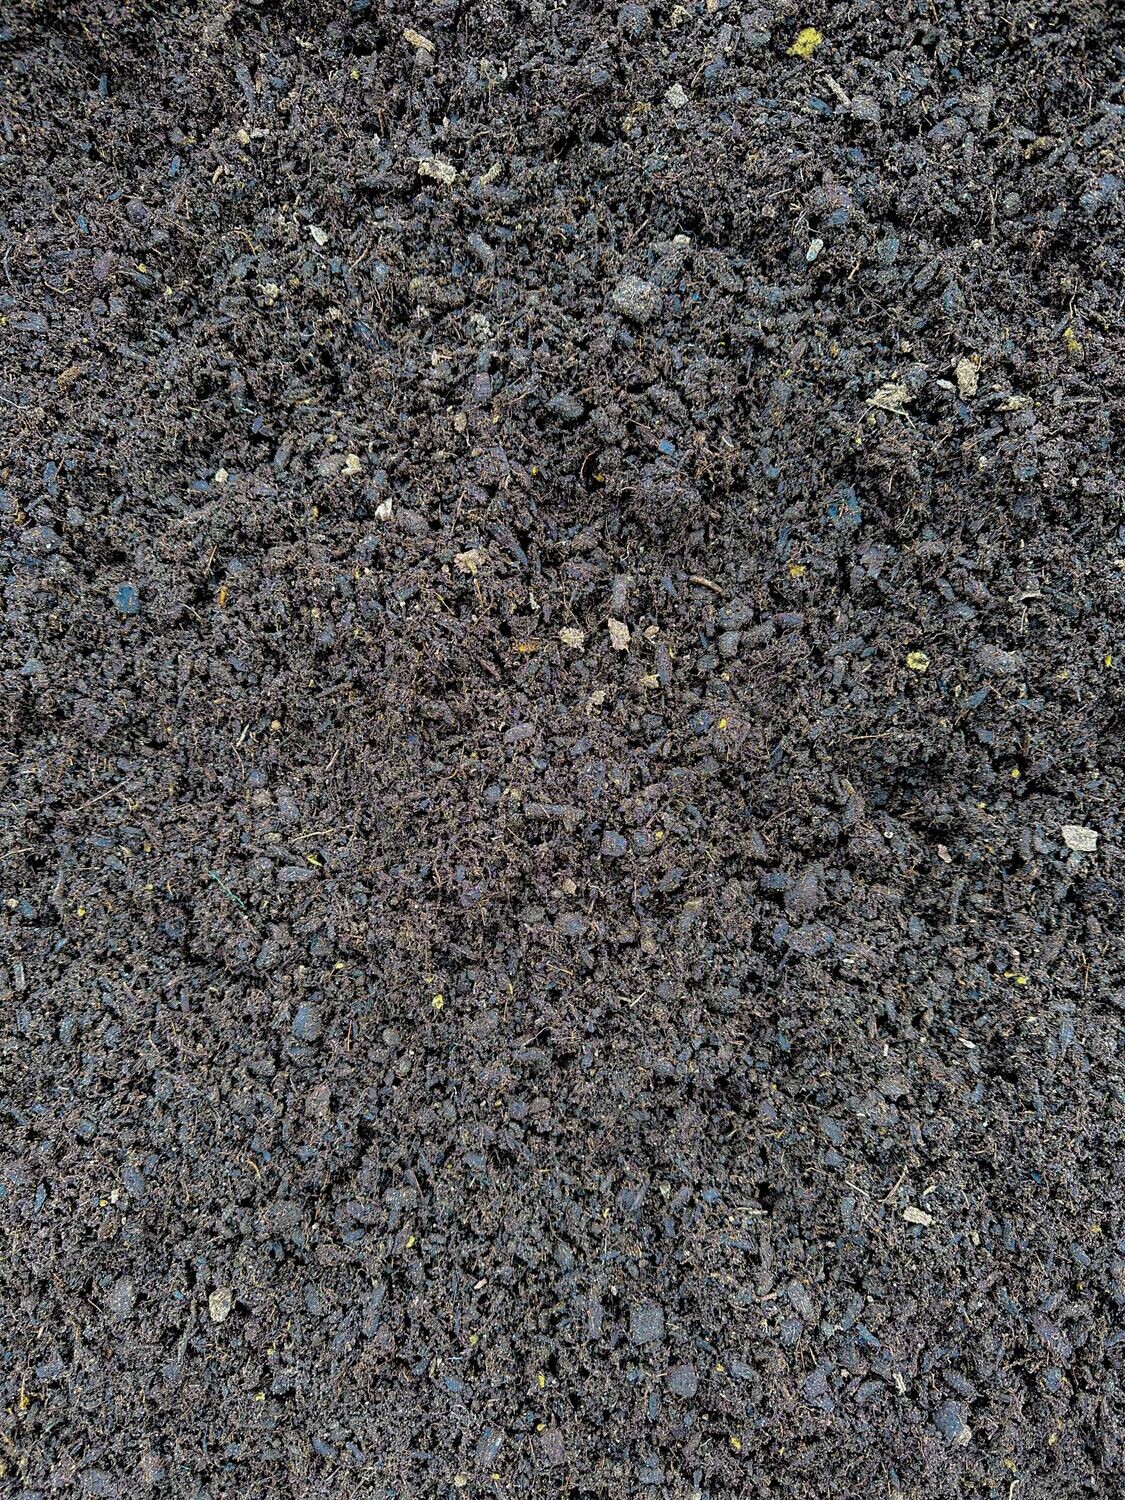 Coco Compost [bulk]